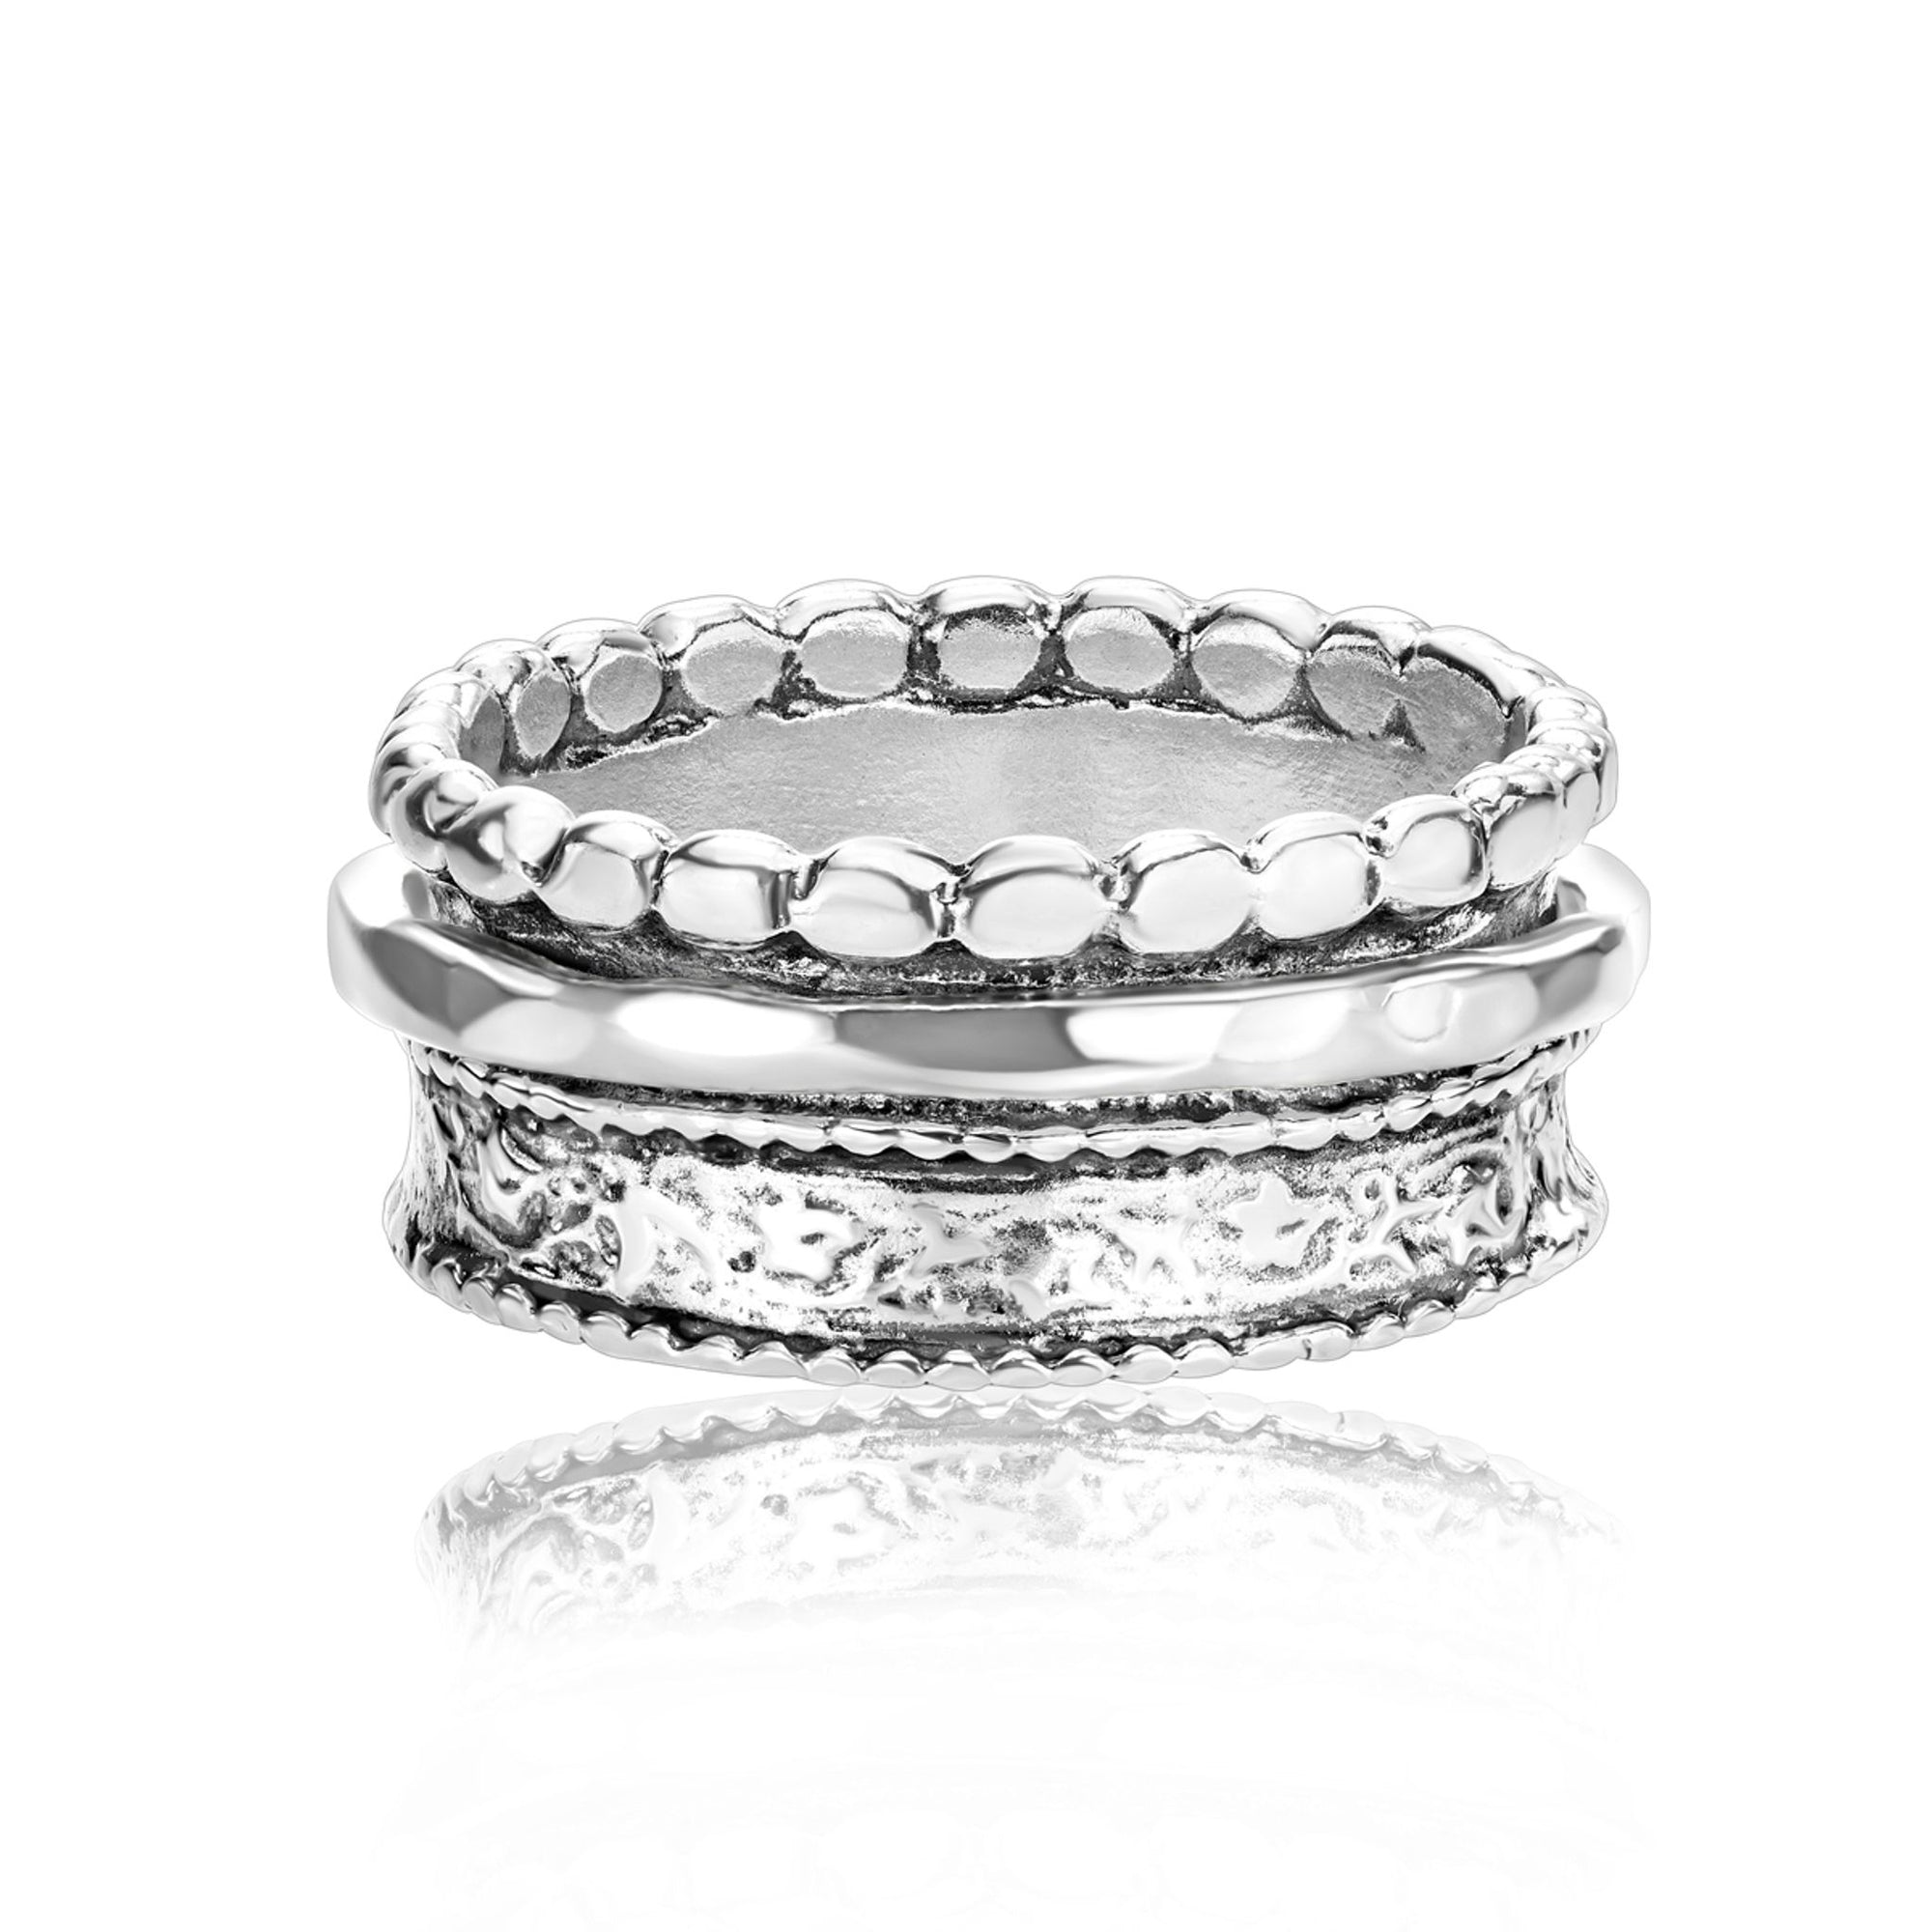 Embossed Sterling Silver Spinner Ring